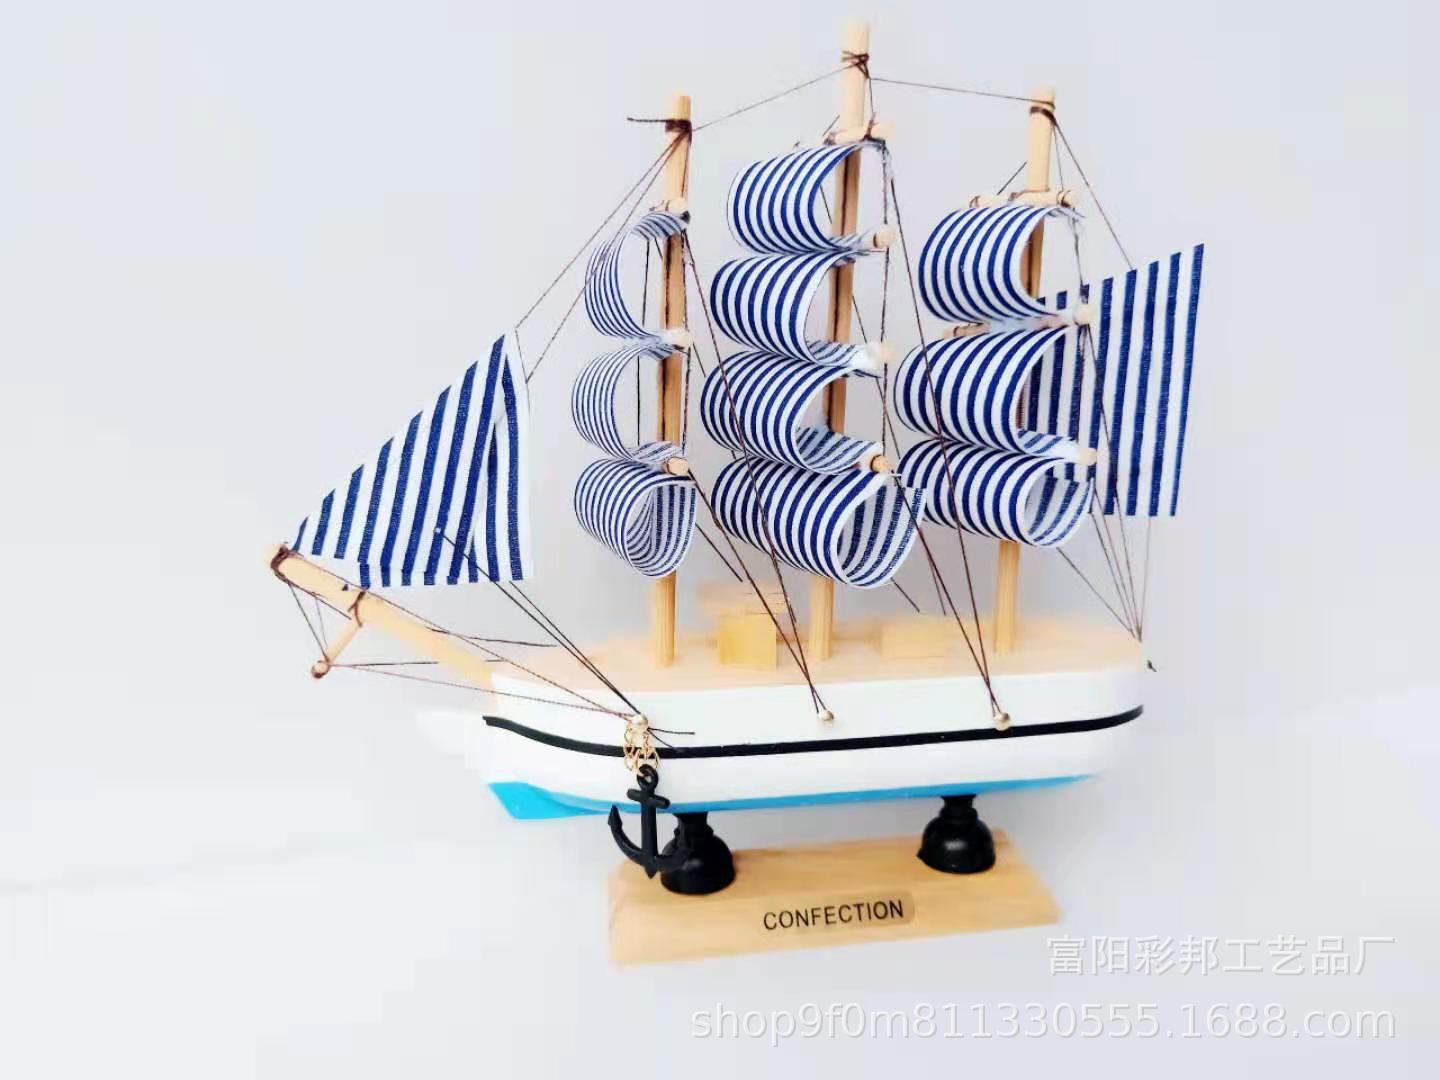 厂家批发地中海风格帆船摆件 16cm木质帆船模型 烘焙用品创意礼品